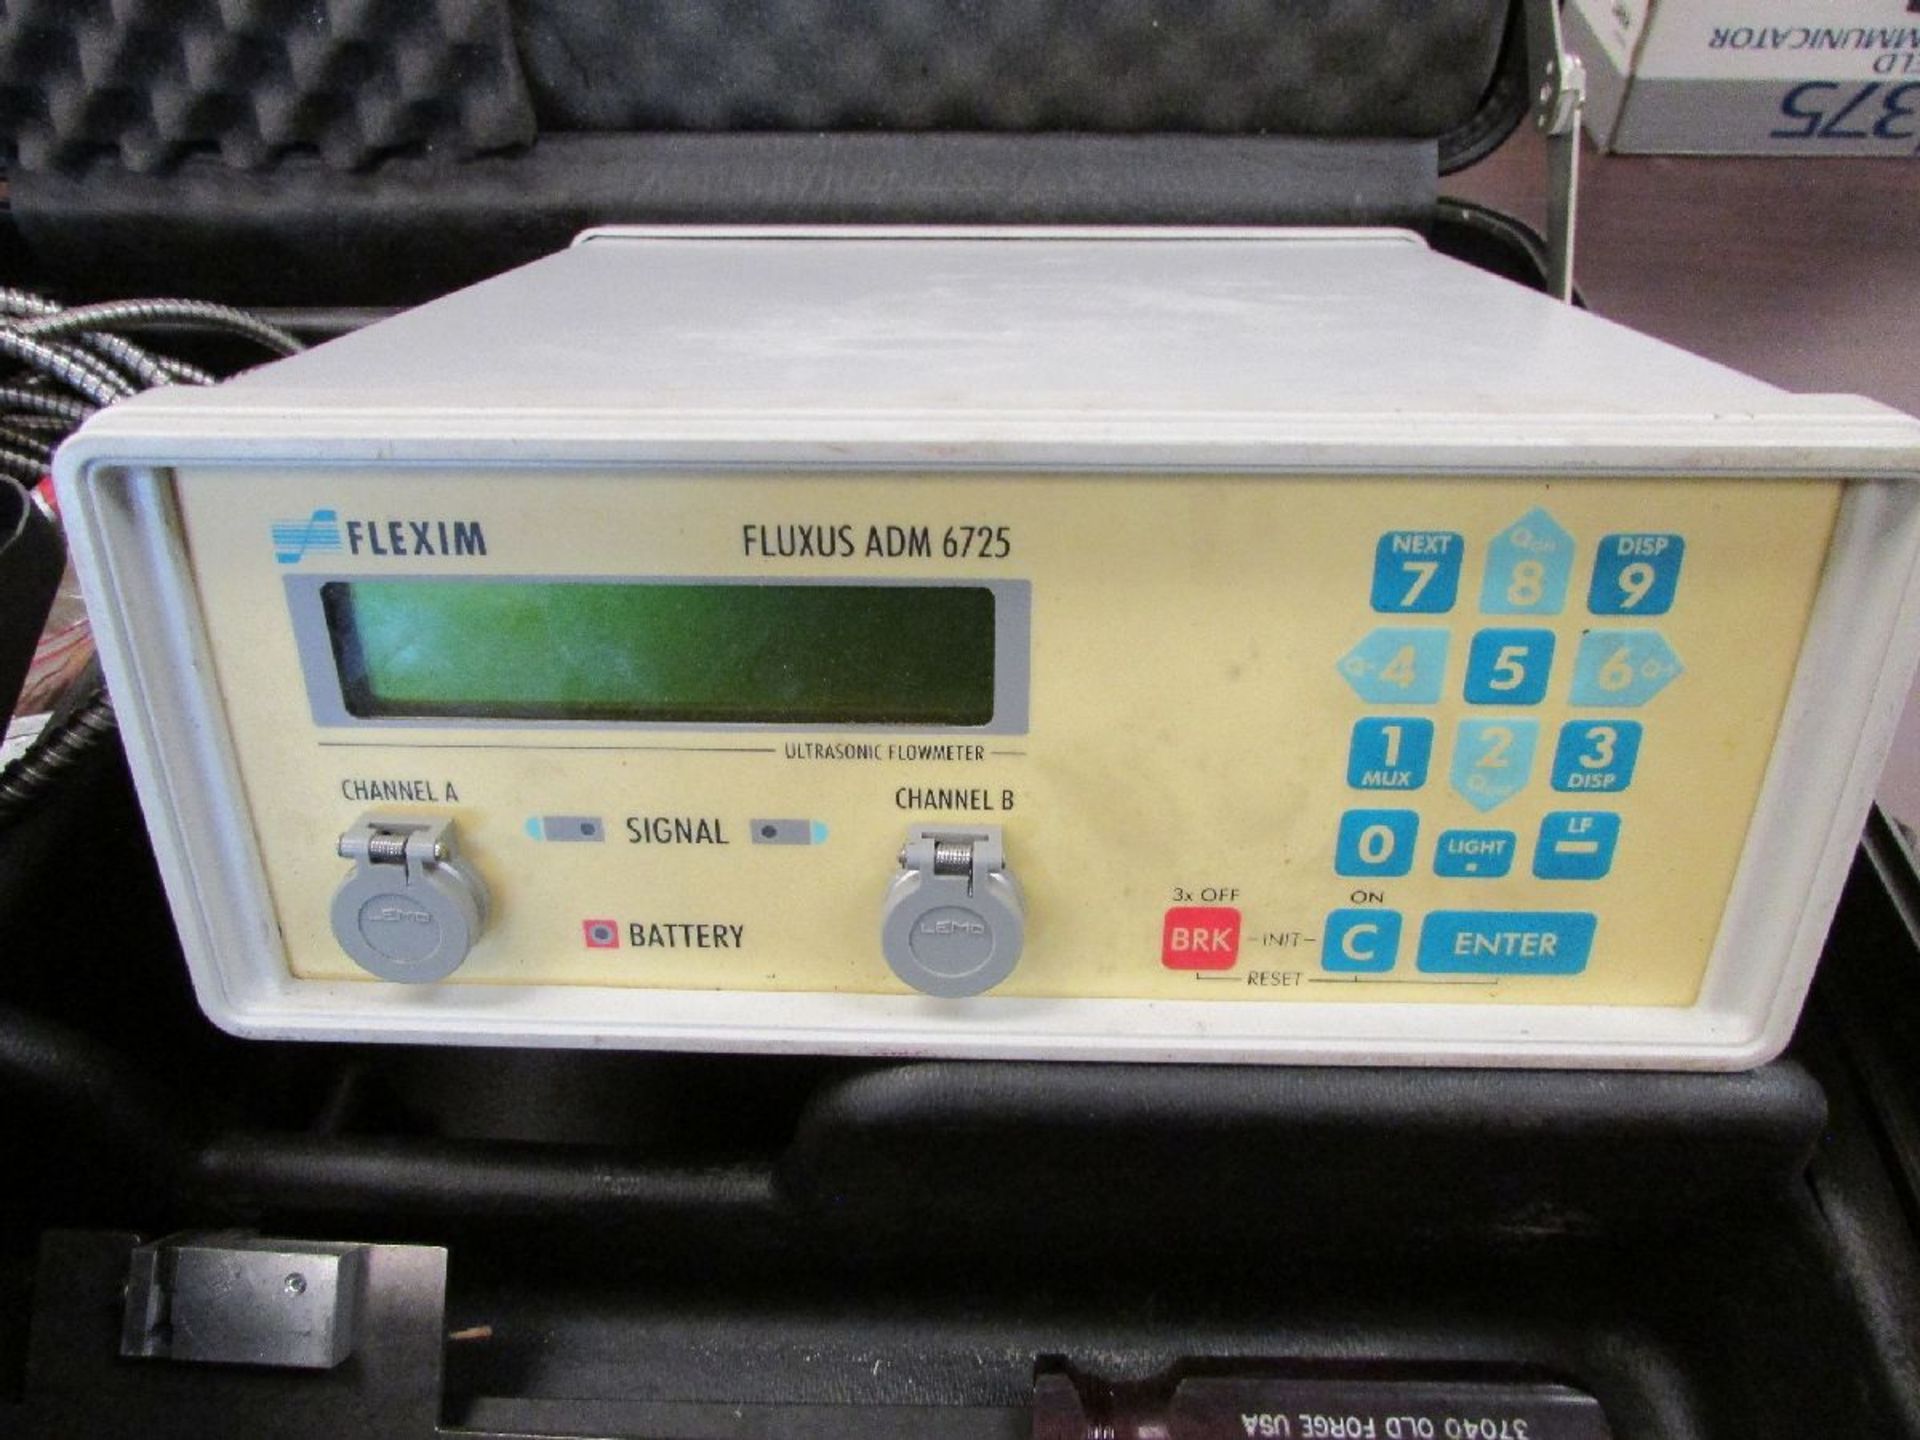 Flexim Model Fluxus ADM 6725 Ultrasonic Flow Meter - Image 2 of 4